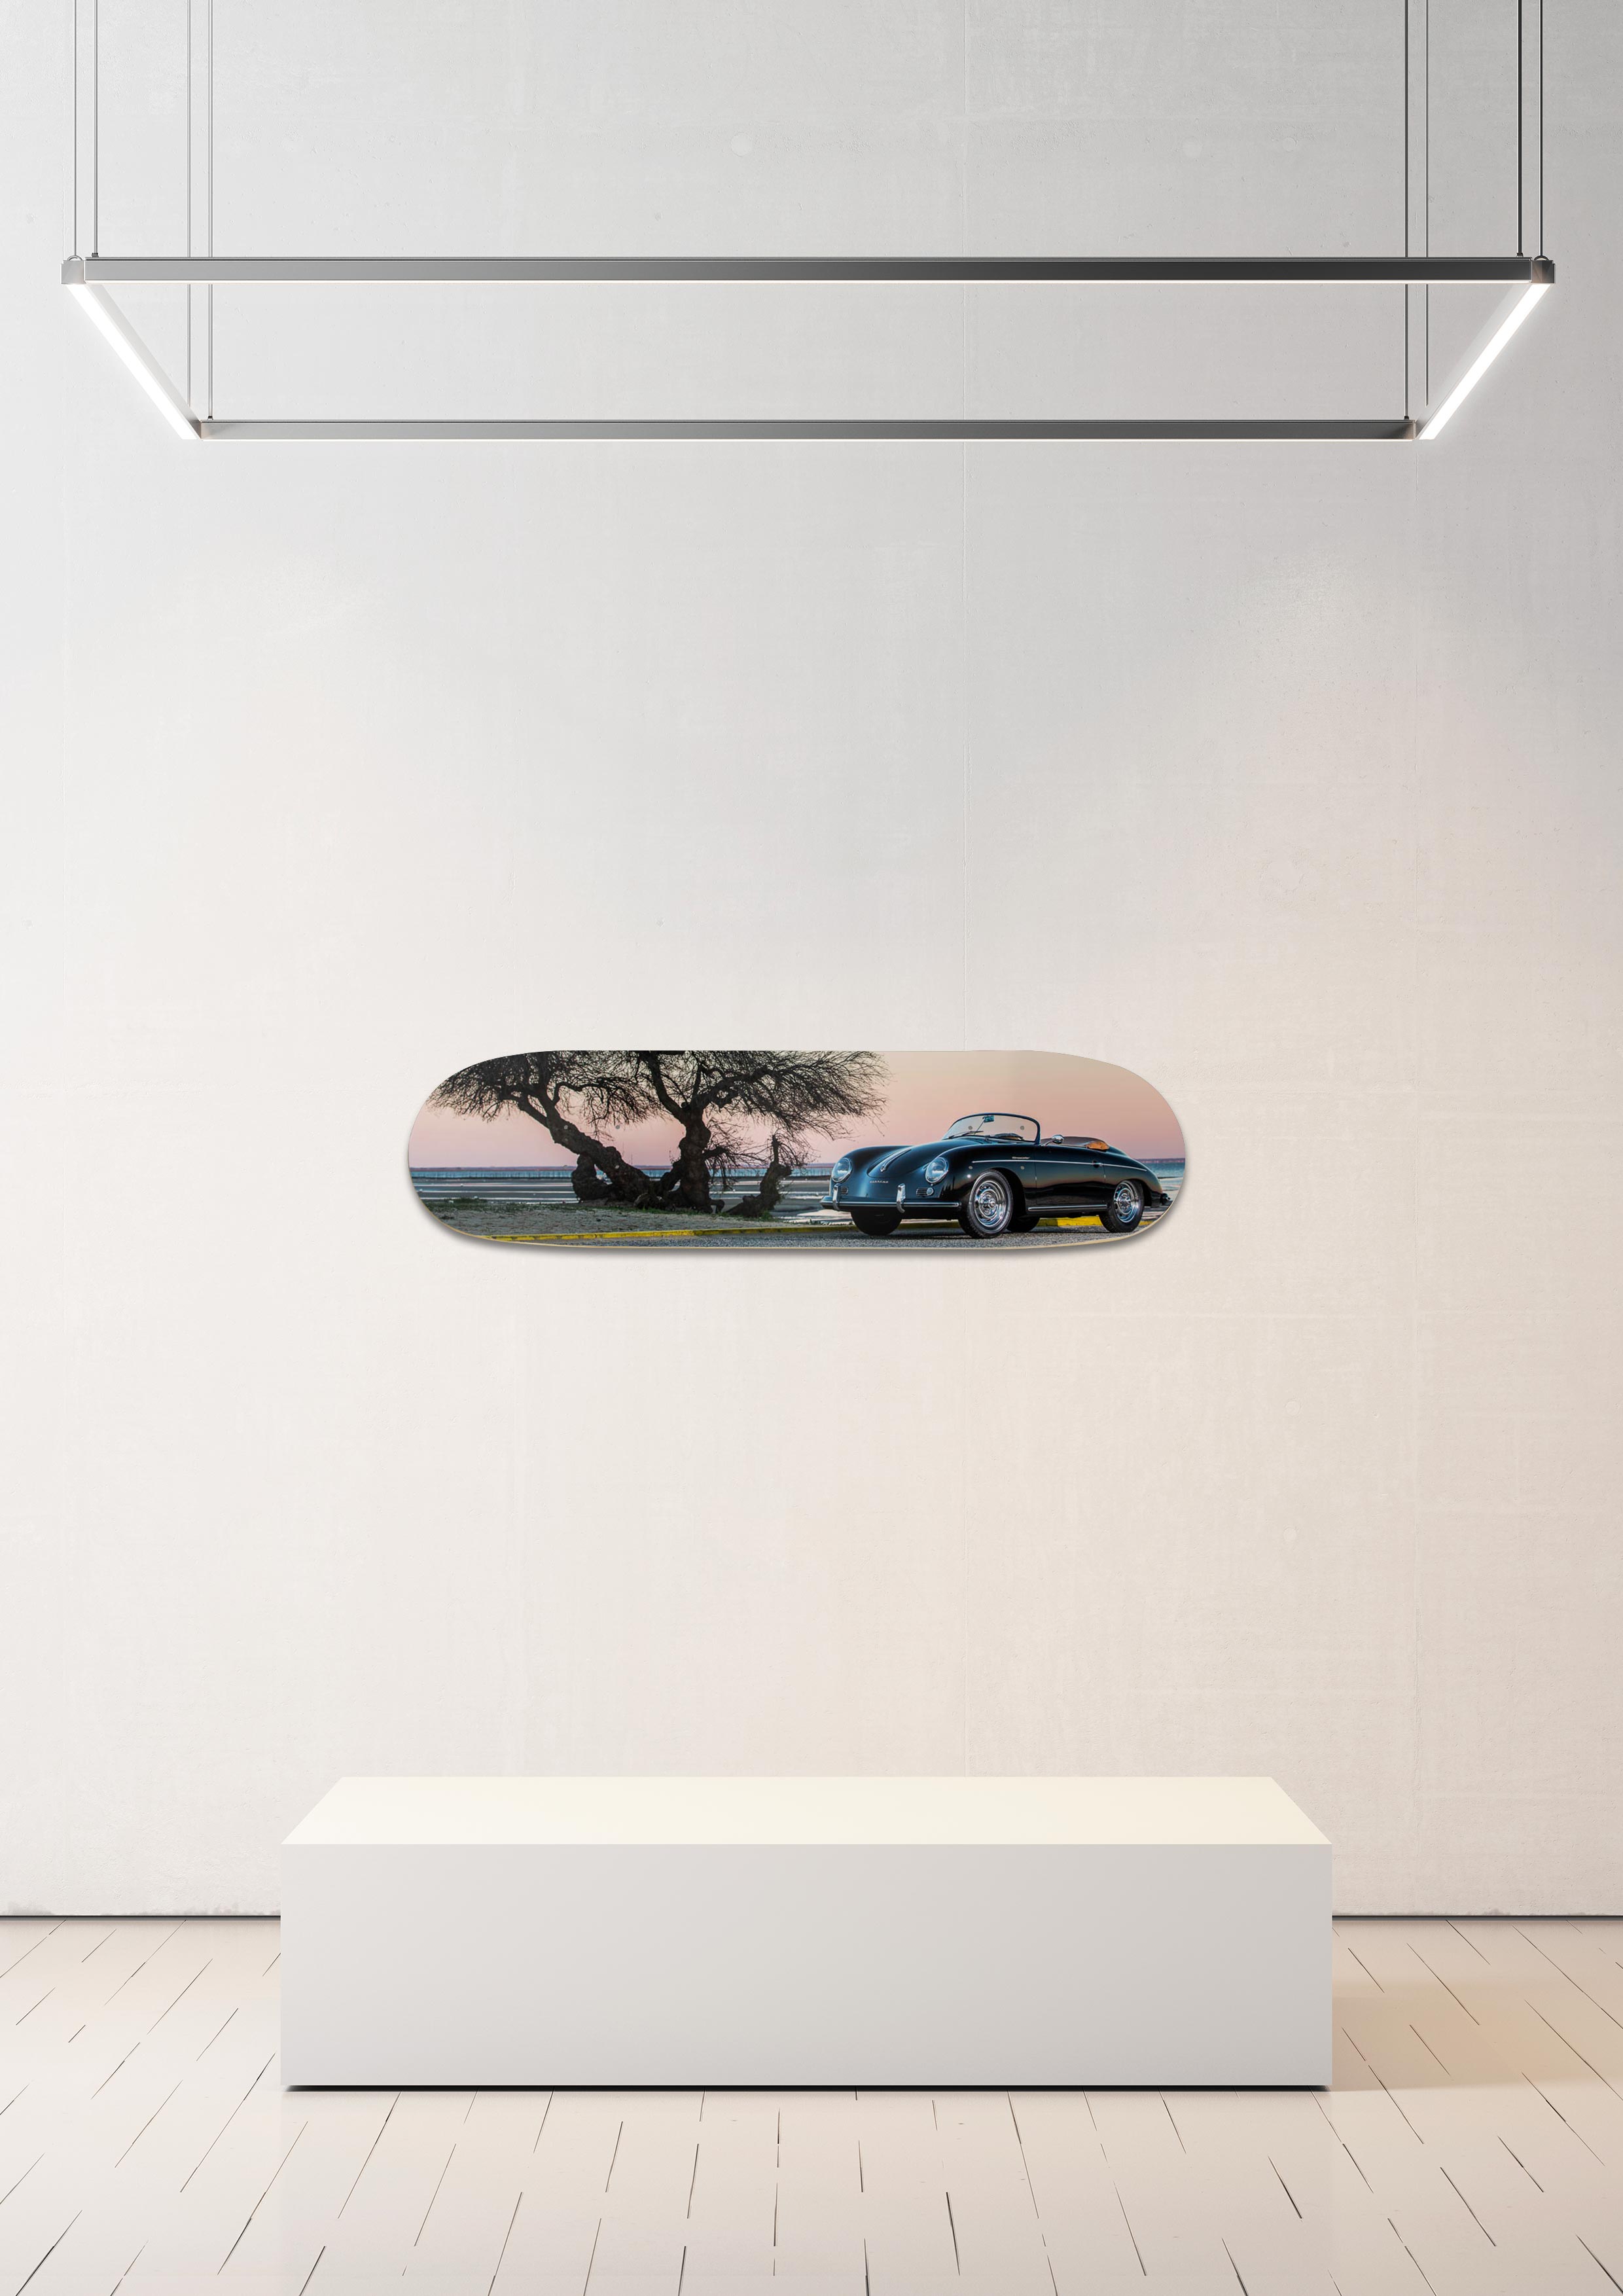 Planche de skate murale - édition très limitée Porsche 356 - Serge Heitz